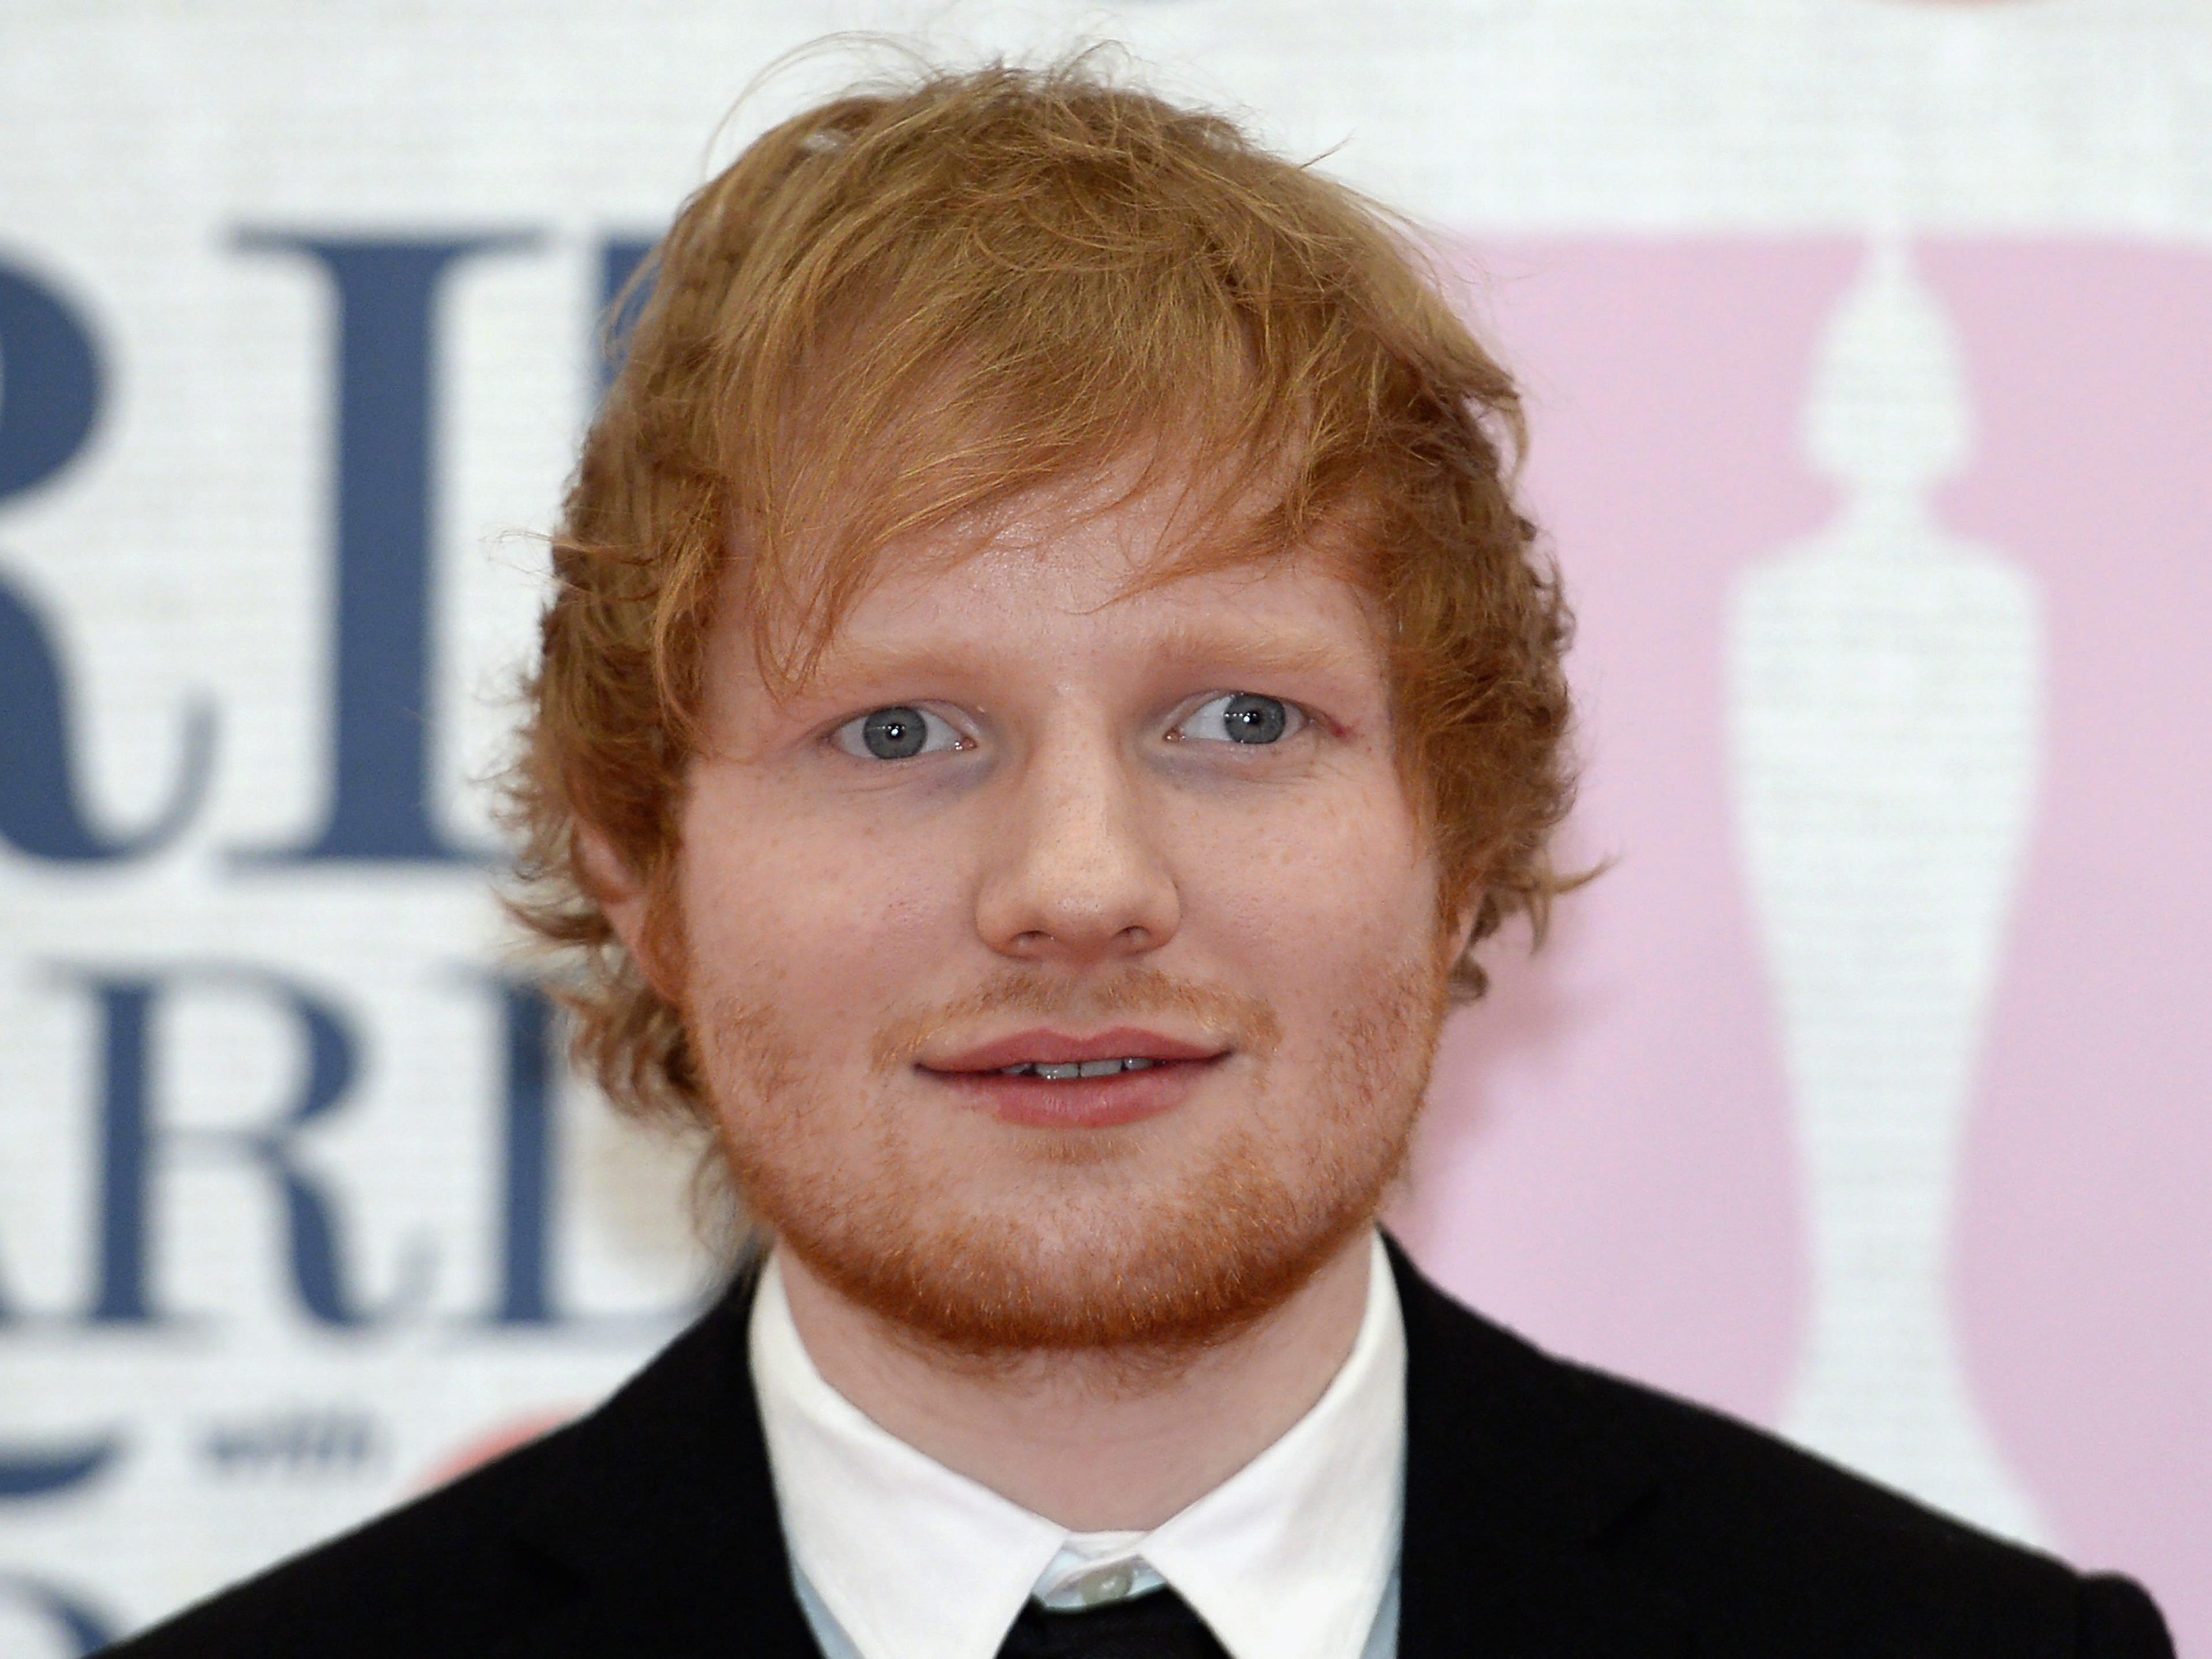 Ed Sheeran half Freund bei Heiratsantrag auf der Bühne